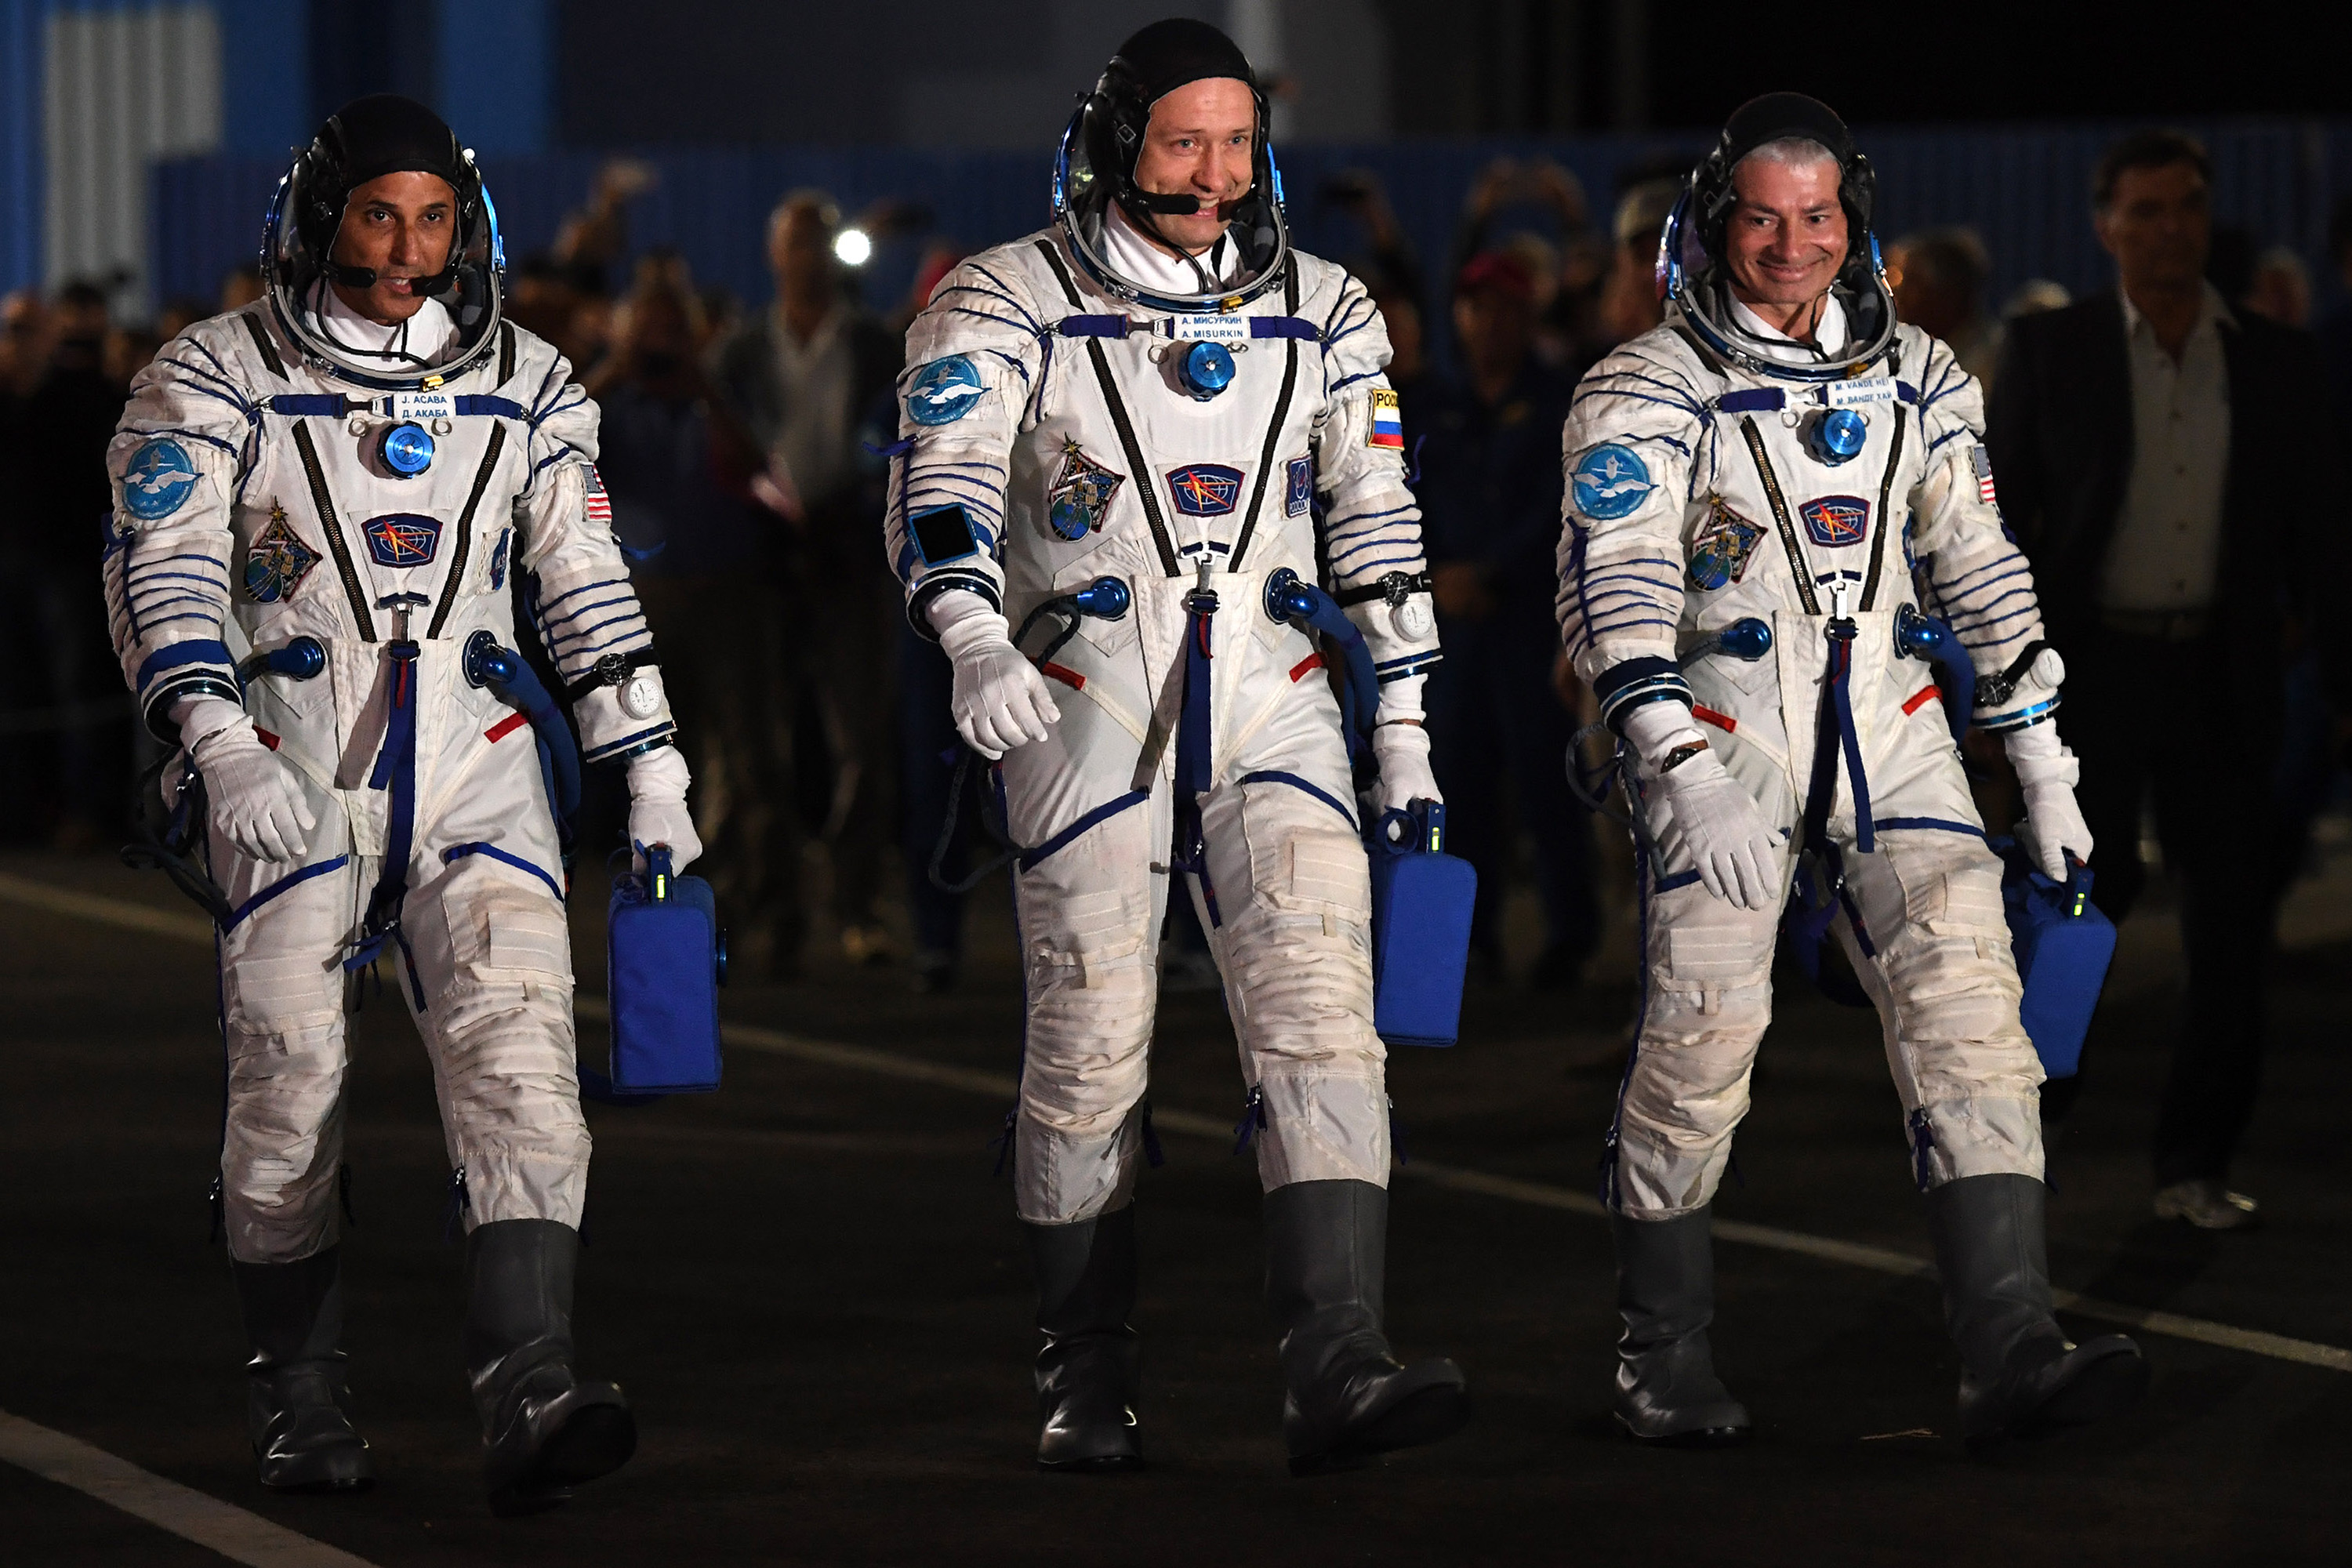 Três astronautas chegam à ISS para missão de cinco meses VEJA